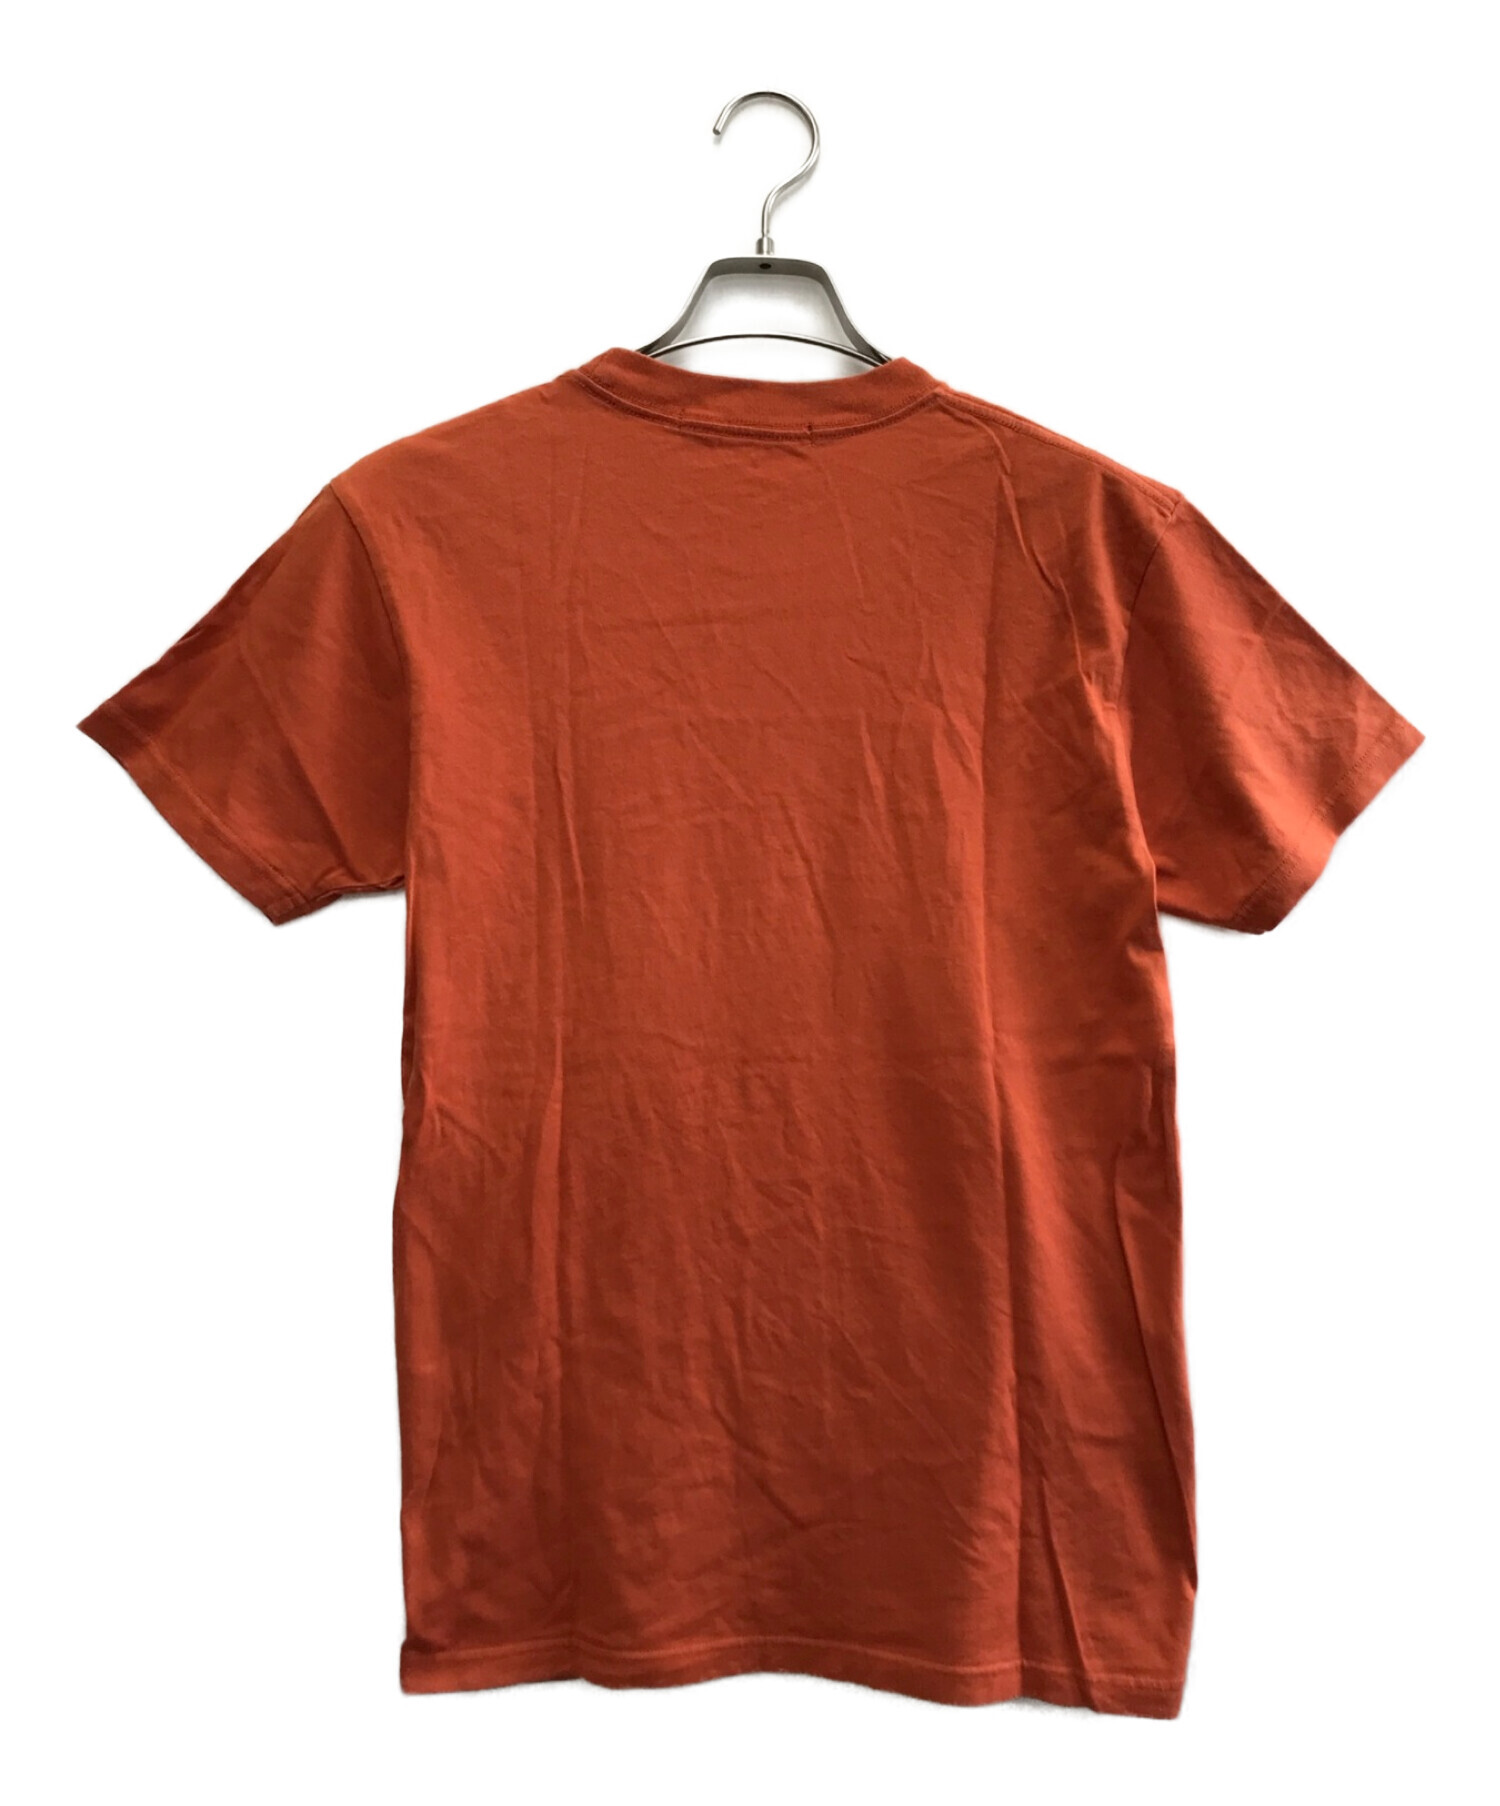 中古・古着通販】JOYRICH (ジョイリッチ) Tシャツ オレンジ サイズ:S 